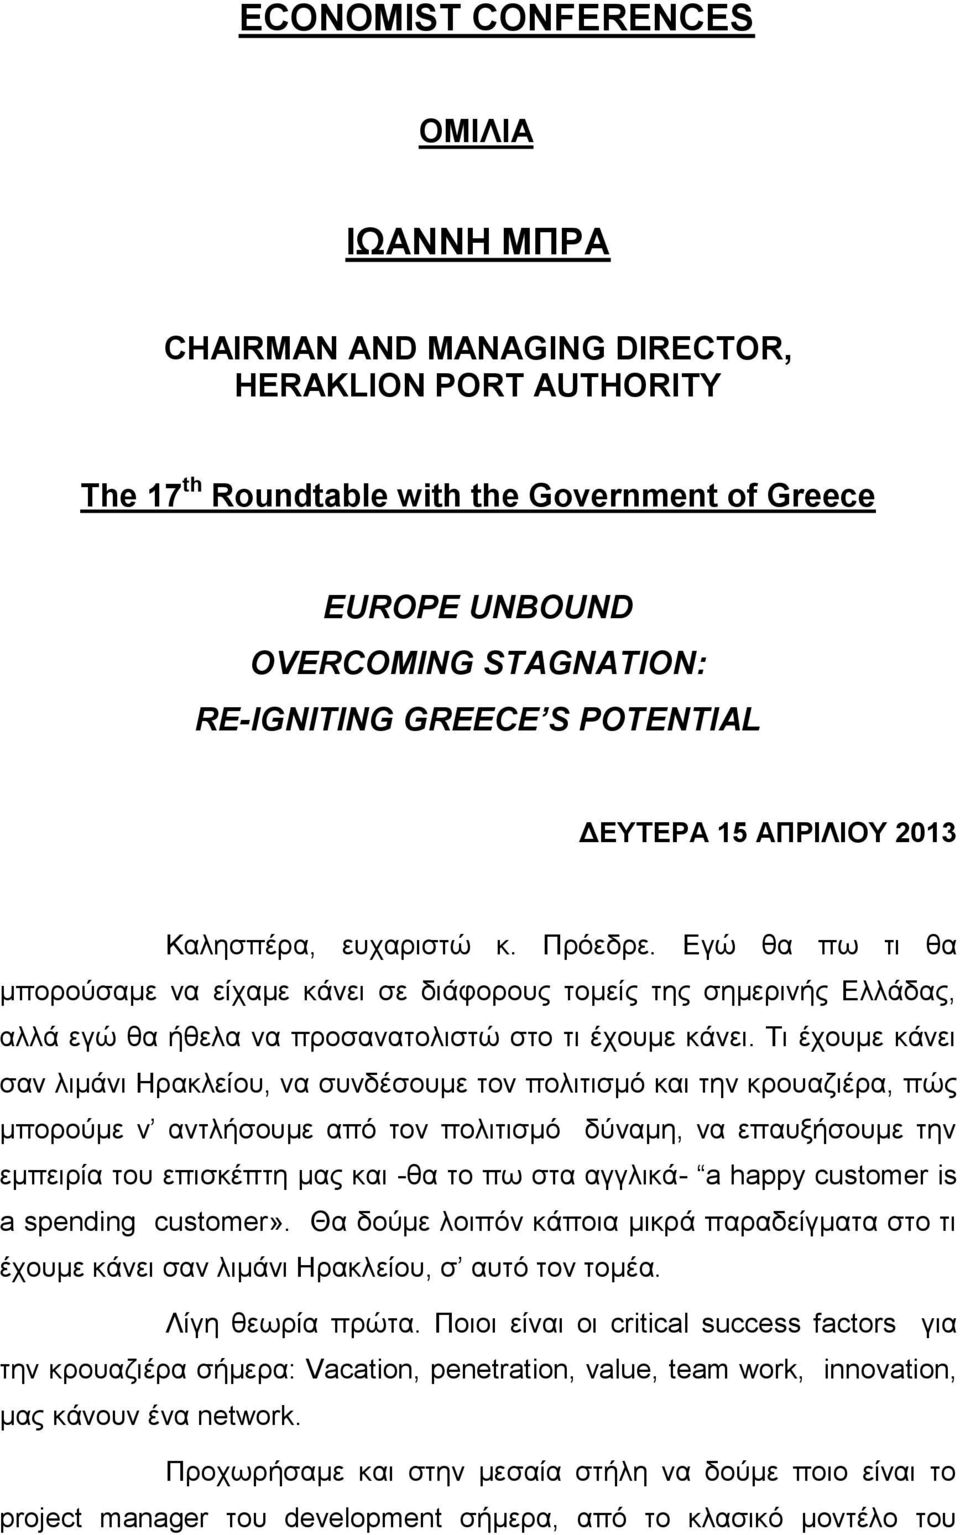 Εγώ θα πω τι θα μπορούσαμε να είχαμε κάνει σε διάφορους τομείς της σημερινής Ελλάδας, αλλά εγώ θα ήθελα να προσανατολιστώ στο τι έχουμε κάνει.